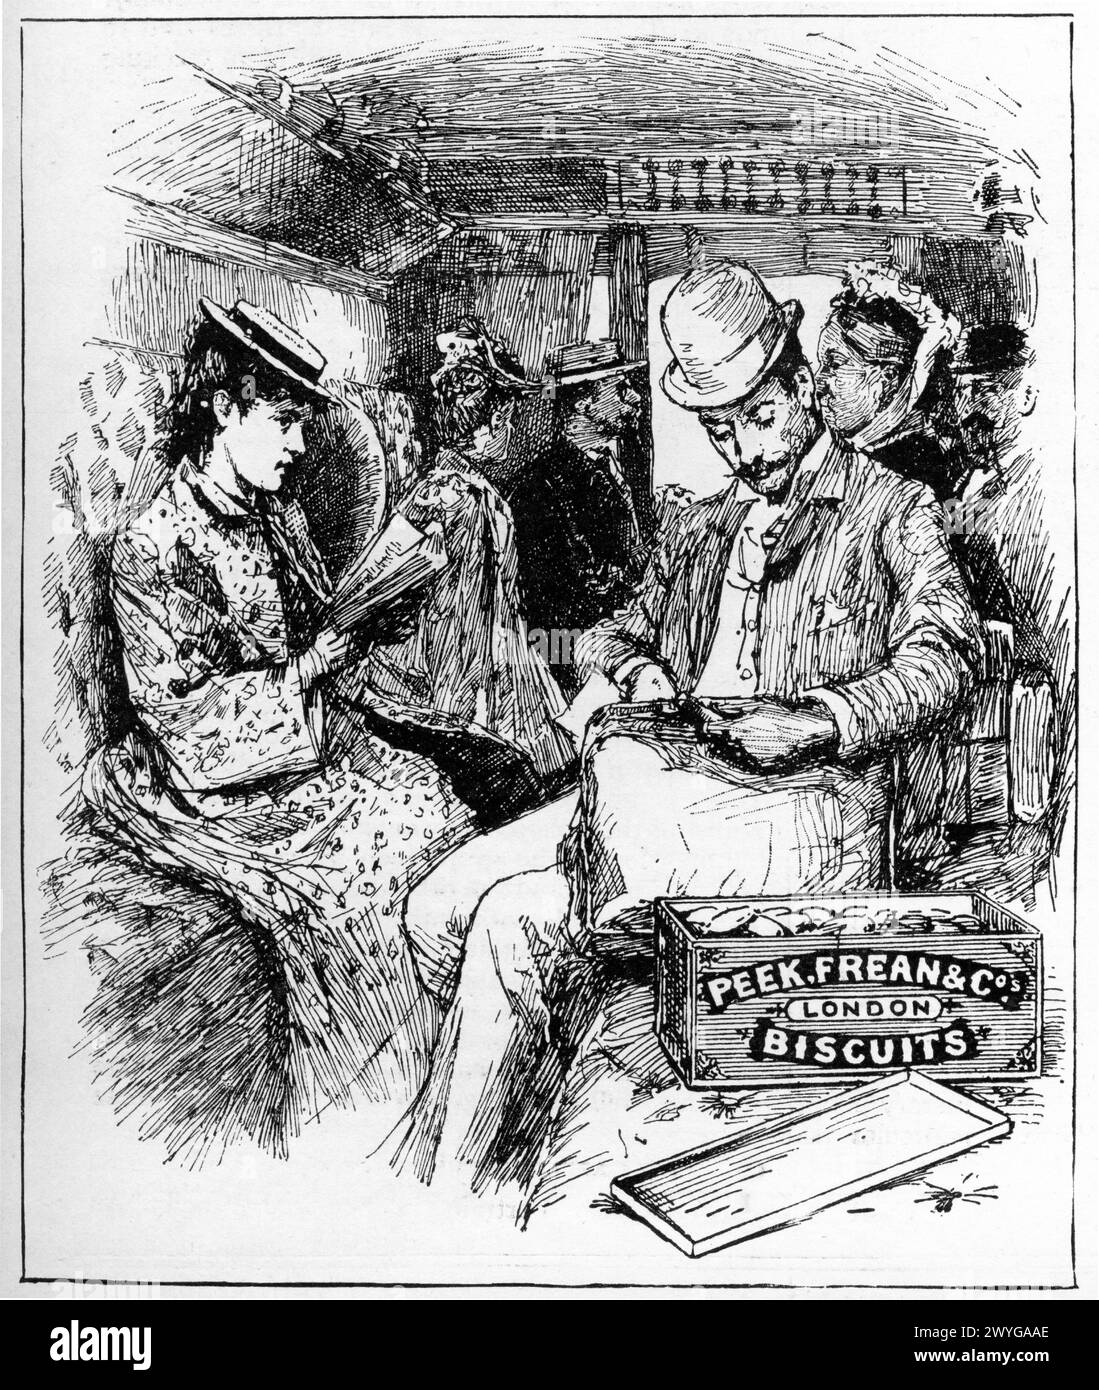 Gravur von Fahrgästen in einem Zugwagen, Werbung für Peek, Frean and Co Biscuits, veröffentlicht 1896 Stockfoto